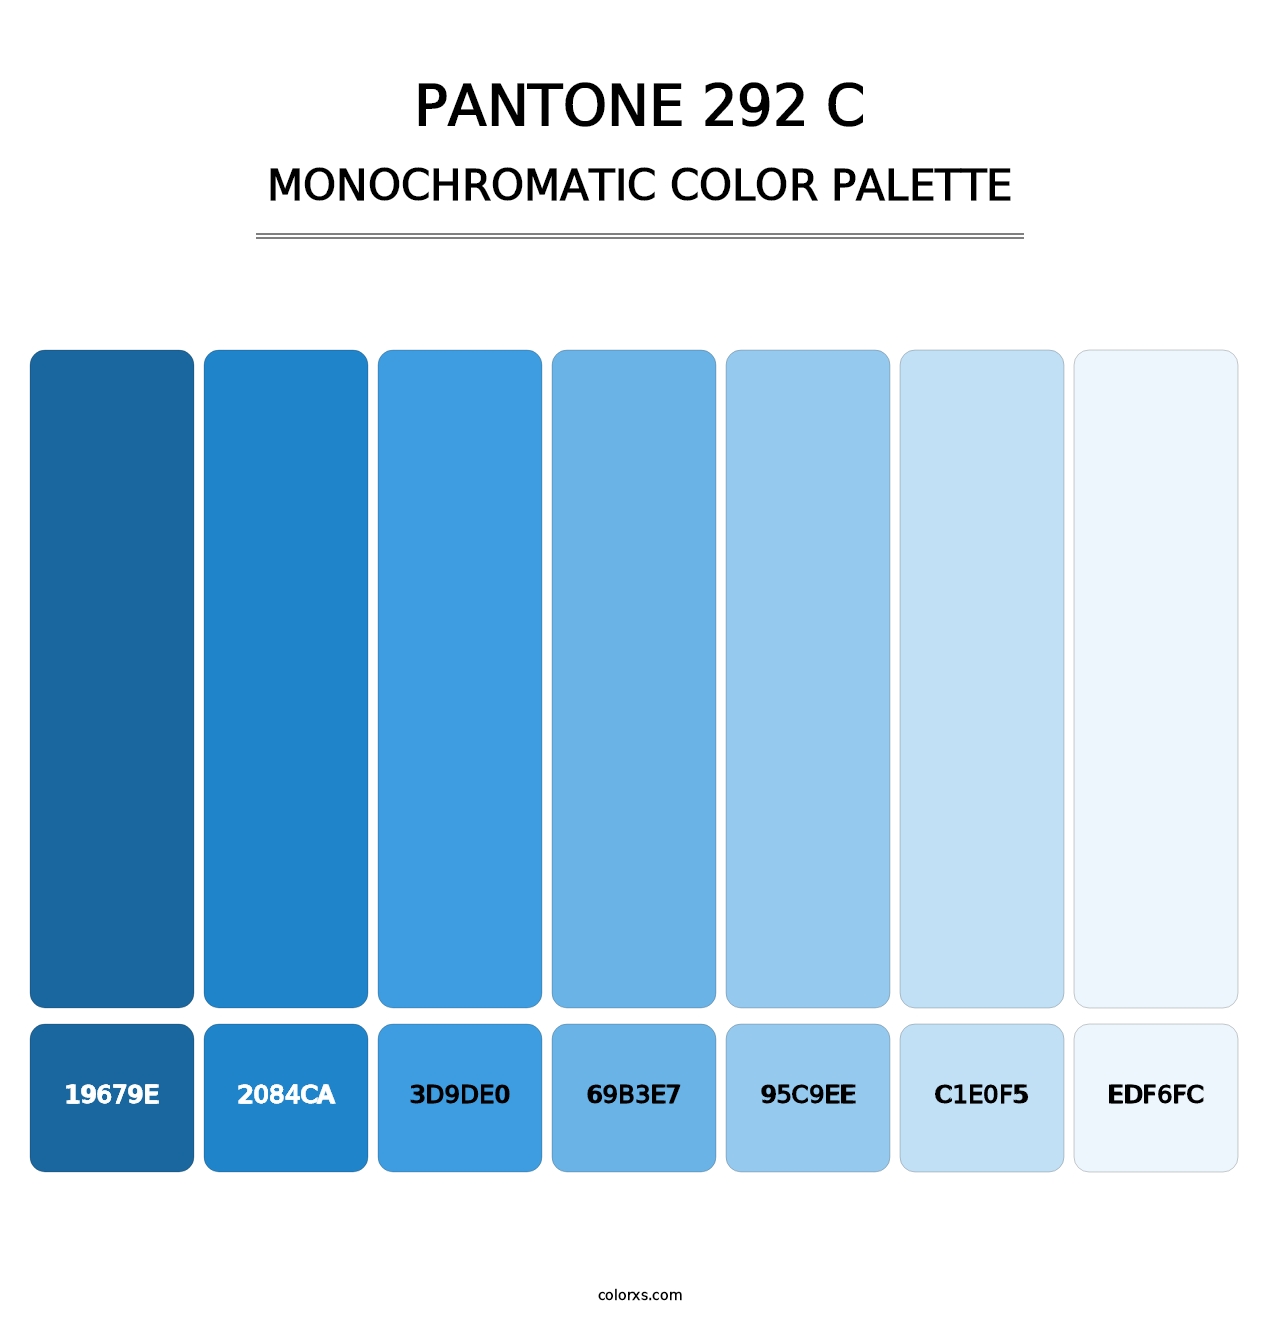 PANTONE 292 C - Monochromatic Color Palette